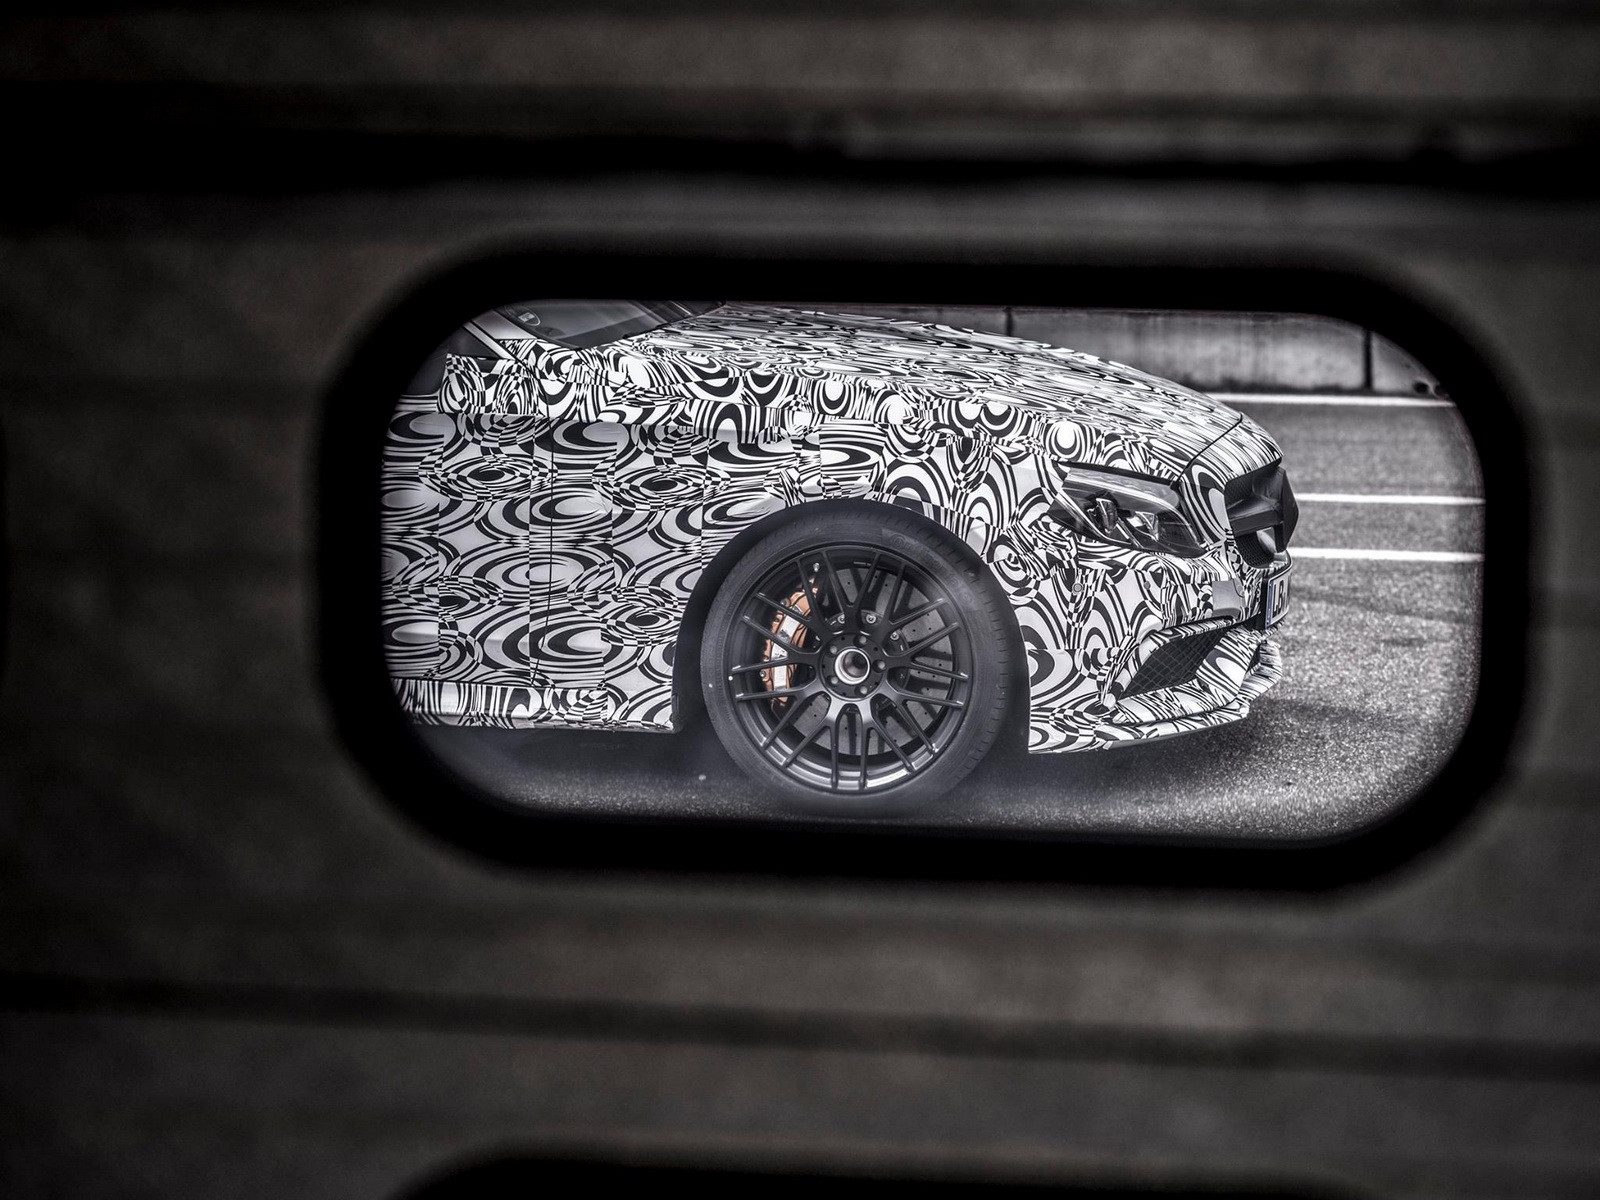  Новый тизер Mercedes-AMG C63 Coupe